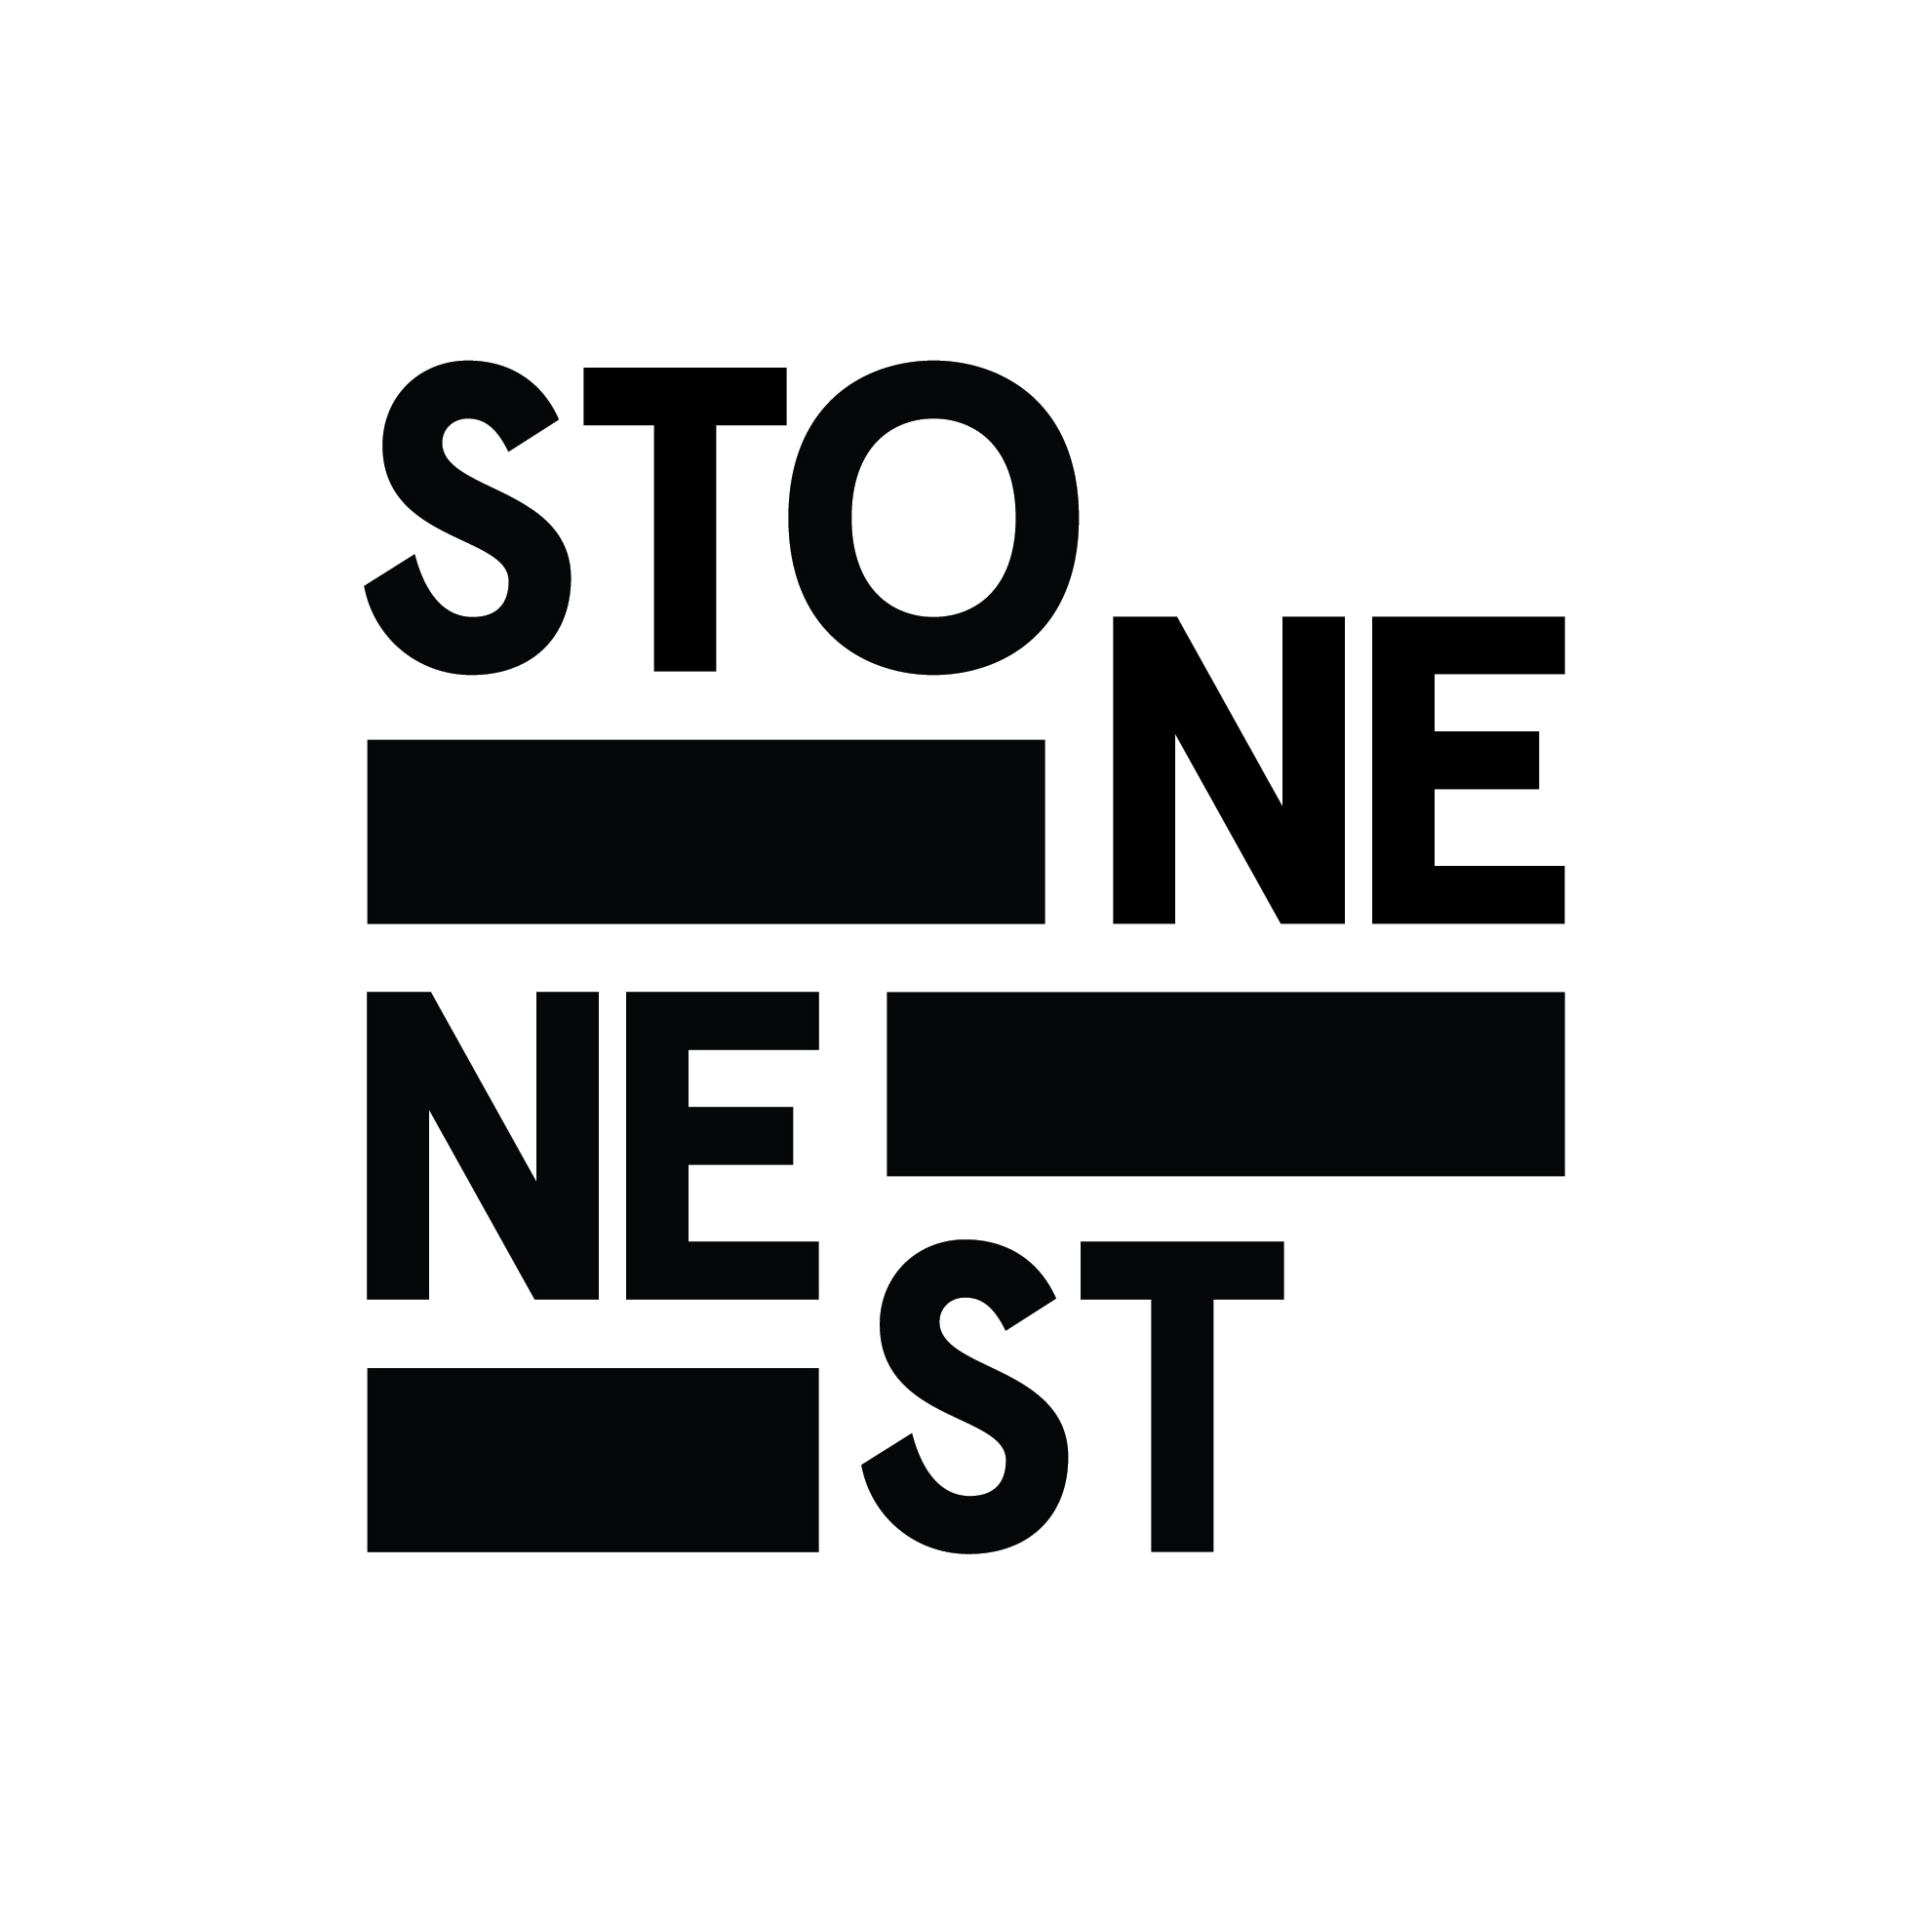 Stone Nest logo